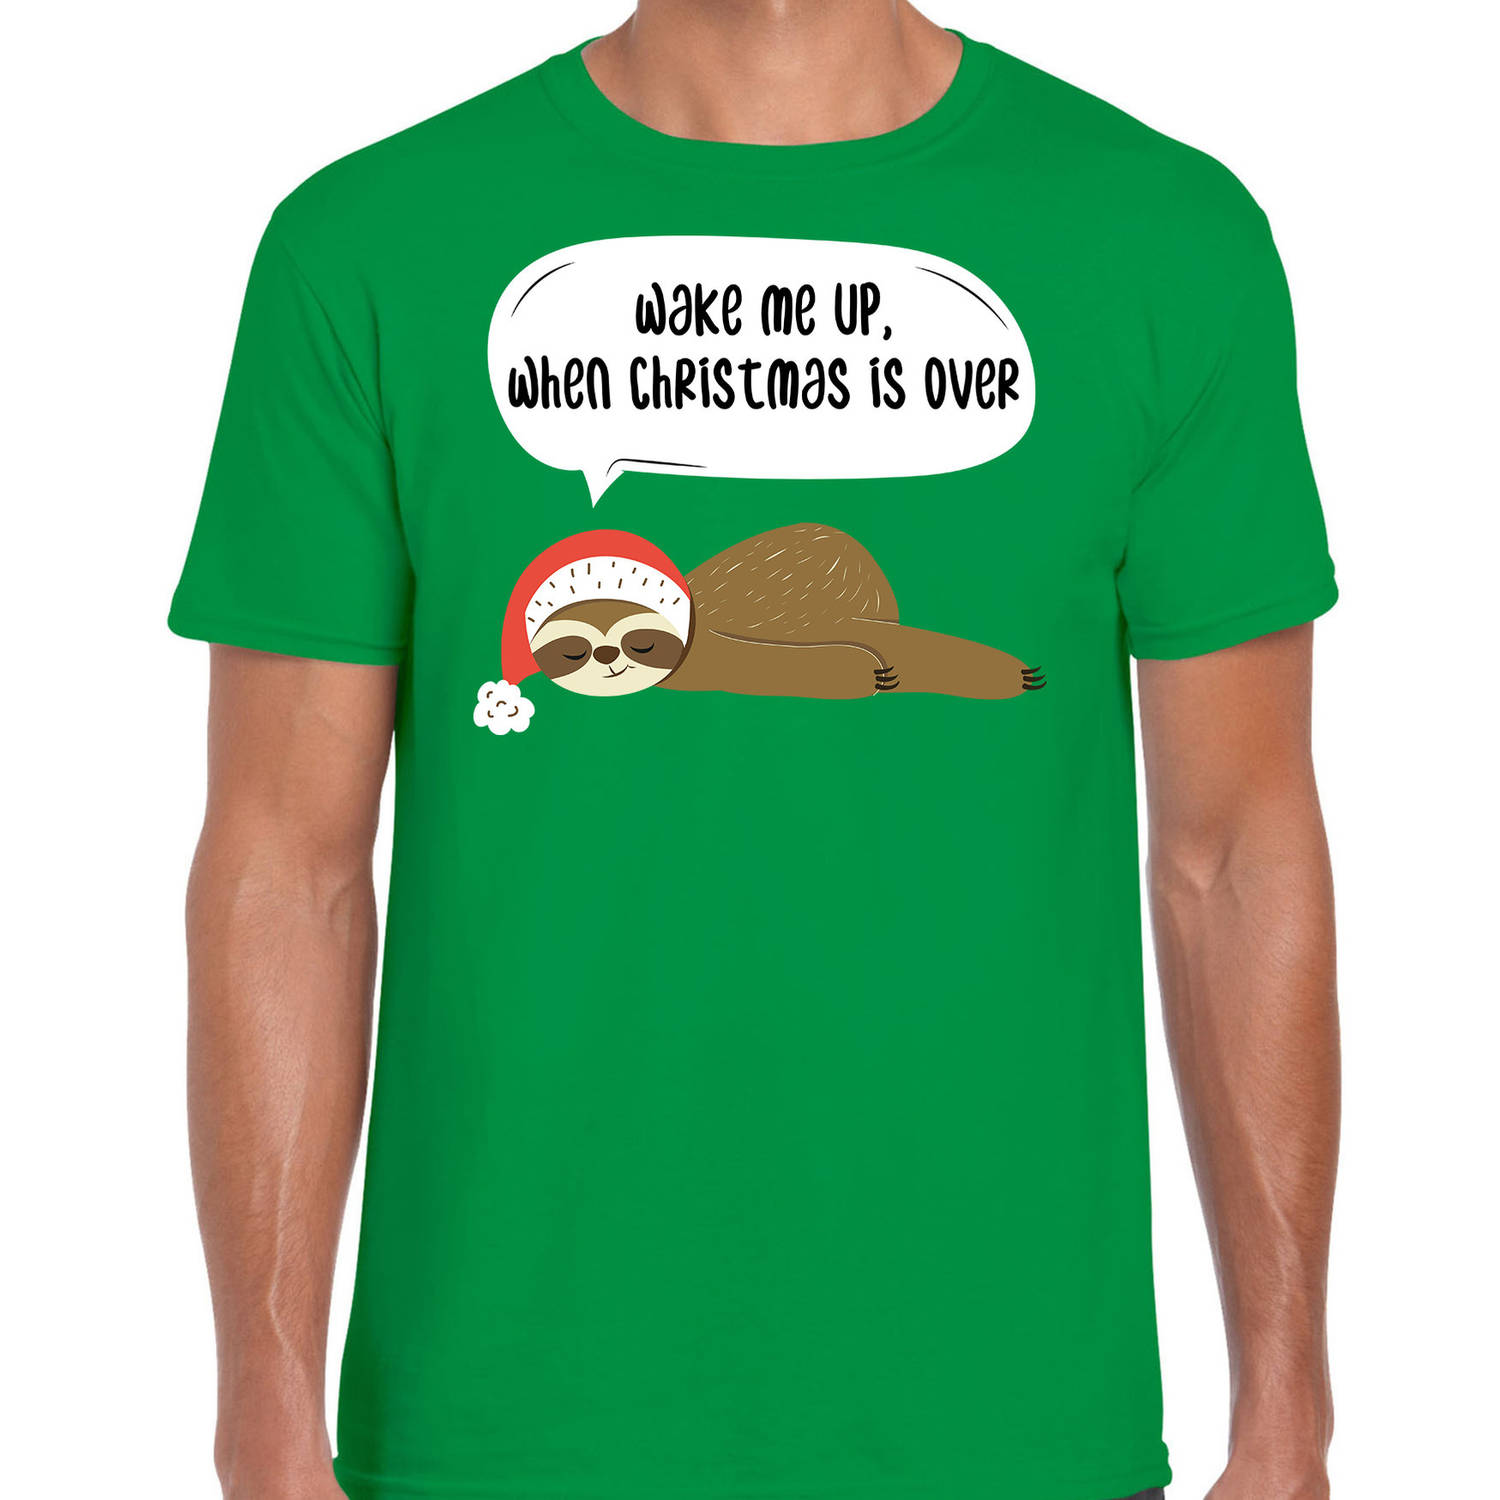 Groen Kerst shirt/ Kerstkleding met luiaard Wake me up when christmas is over voor heren L - kerst t-shirts